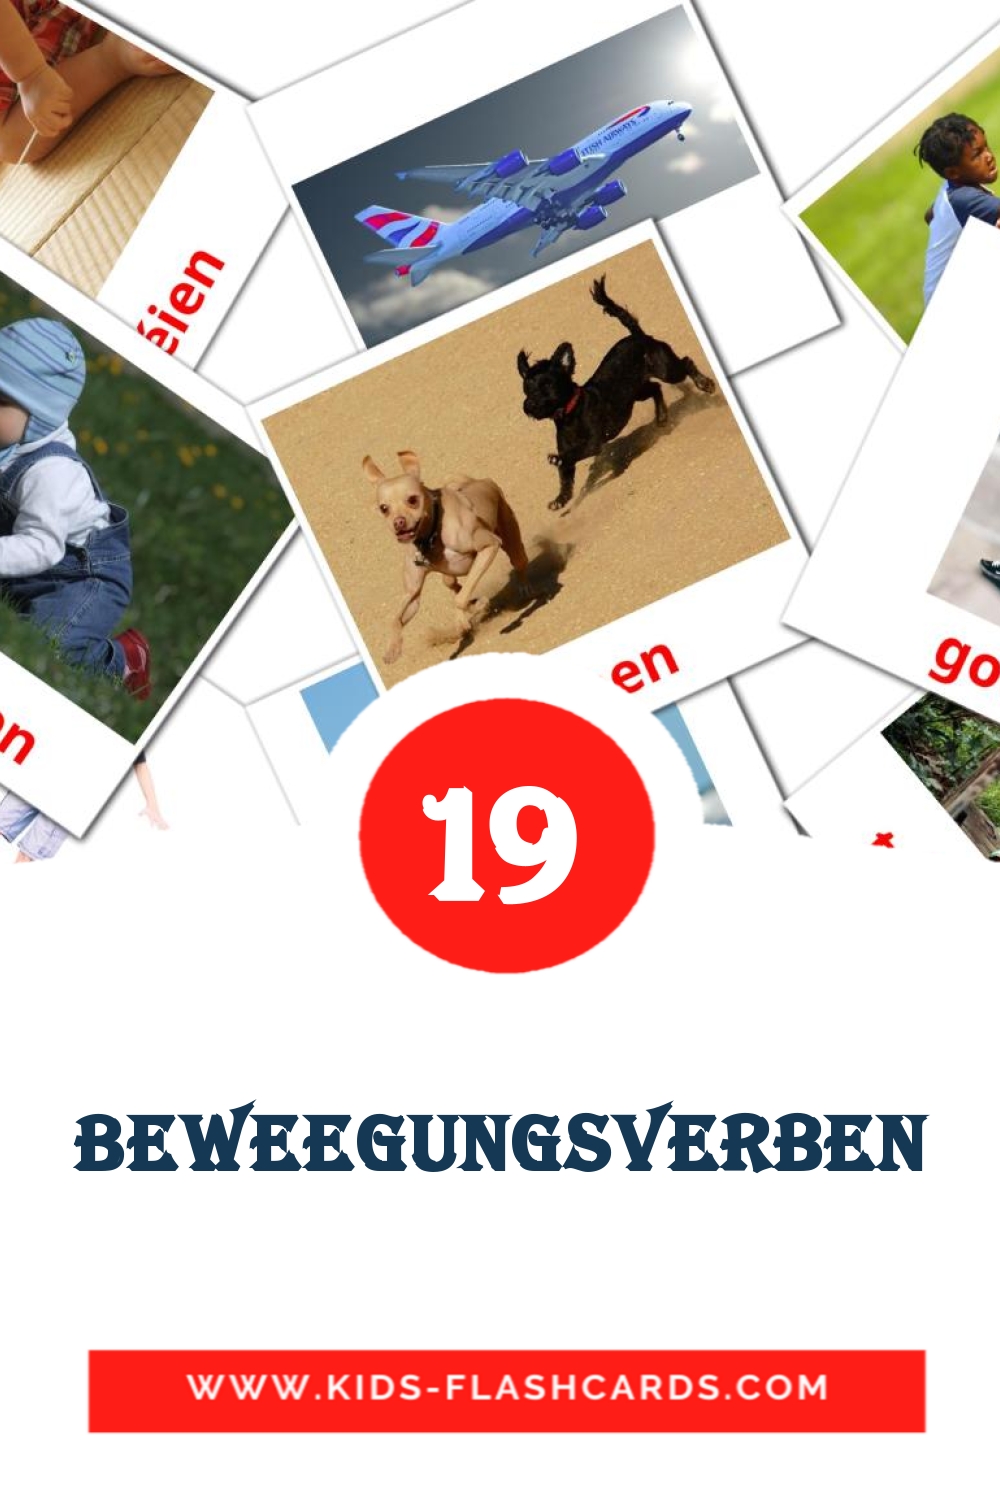 19 carte illustrate di Beweegungsverben per la scuola materna in lussemburghese